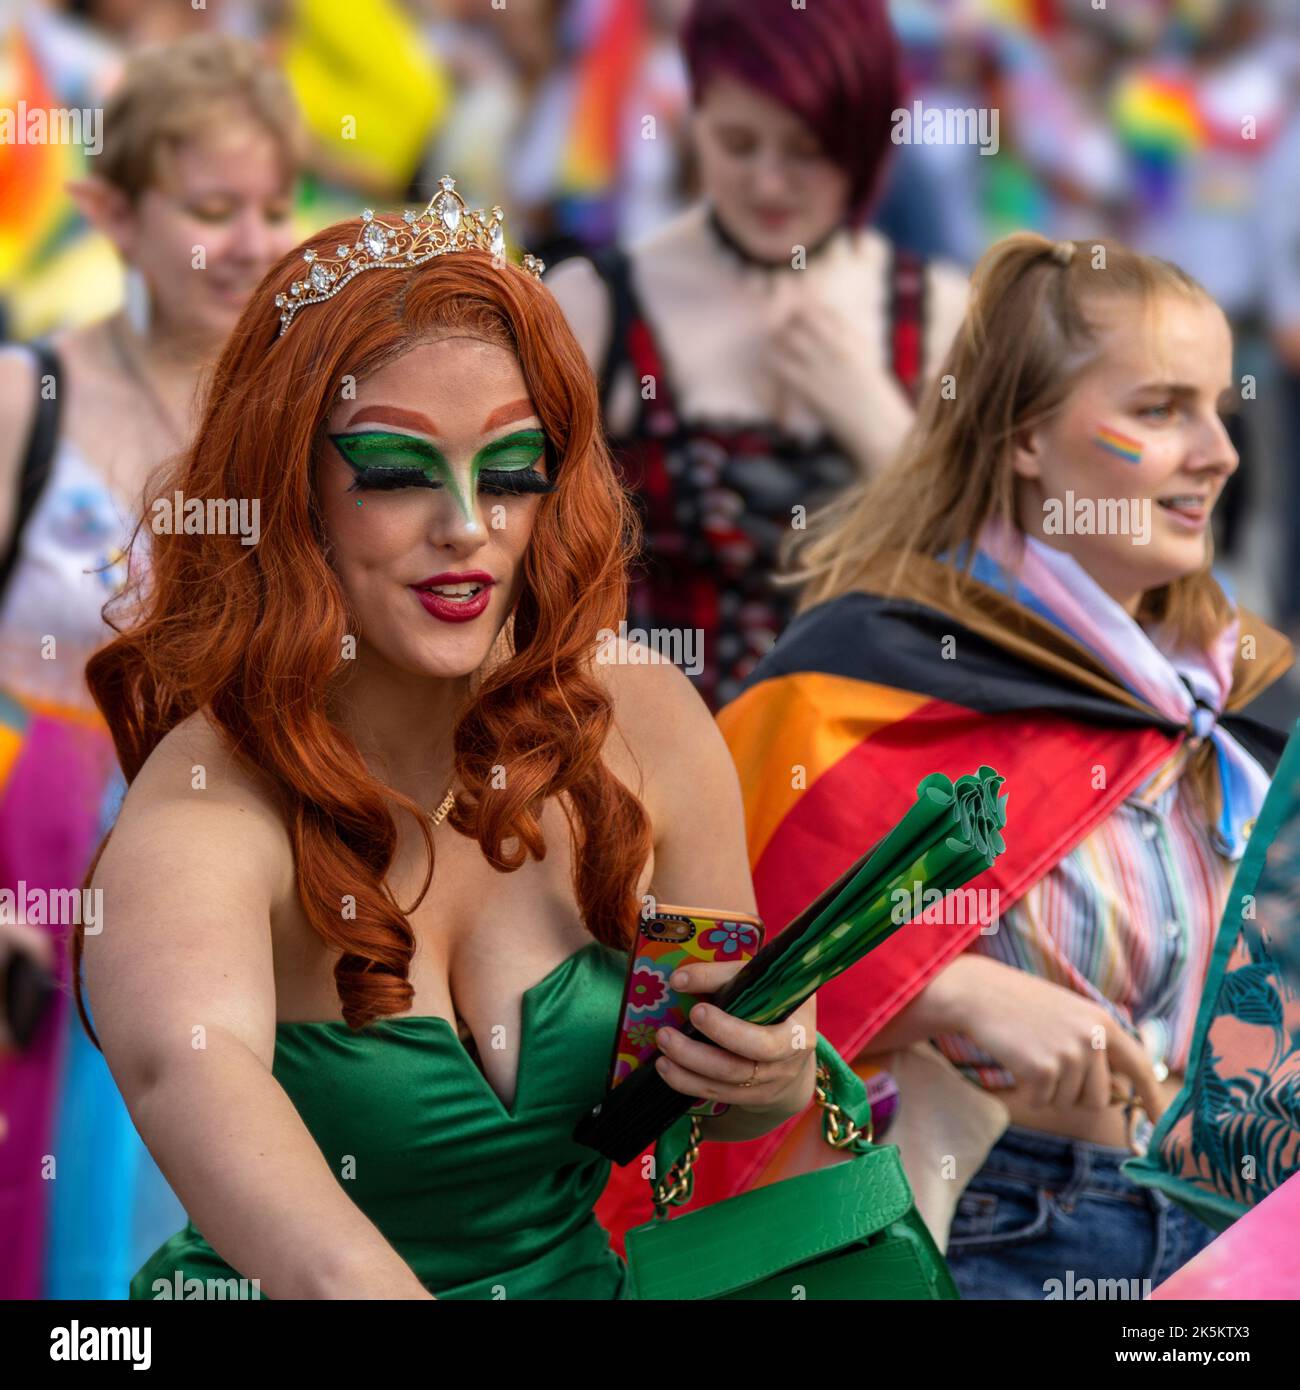 Une femme attirante aux cheveux rouges et à la robe verte participe au défilé de la Birmingham Pride avec ses amis. Banque D'Images